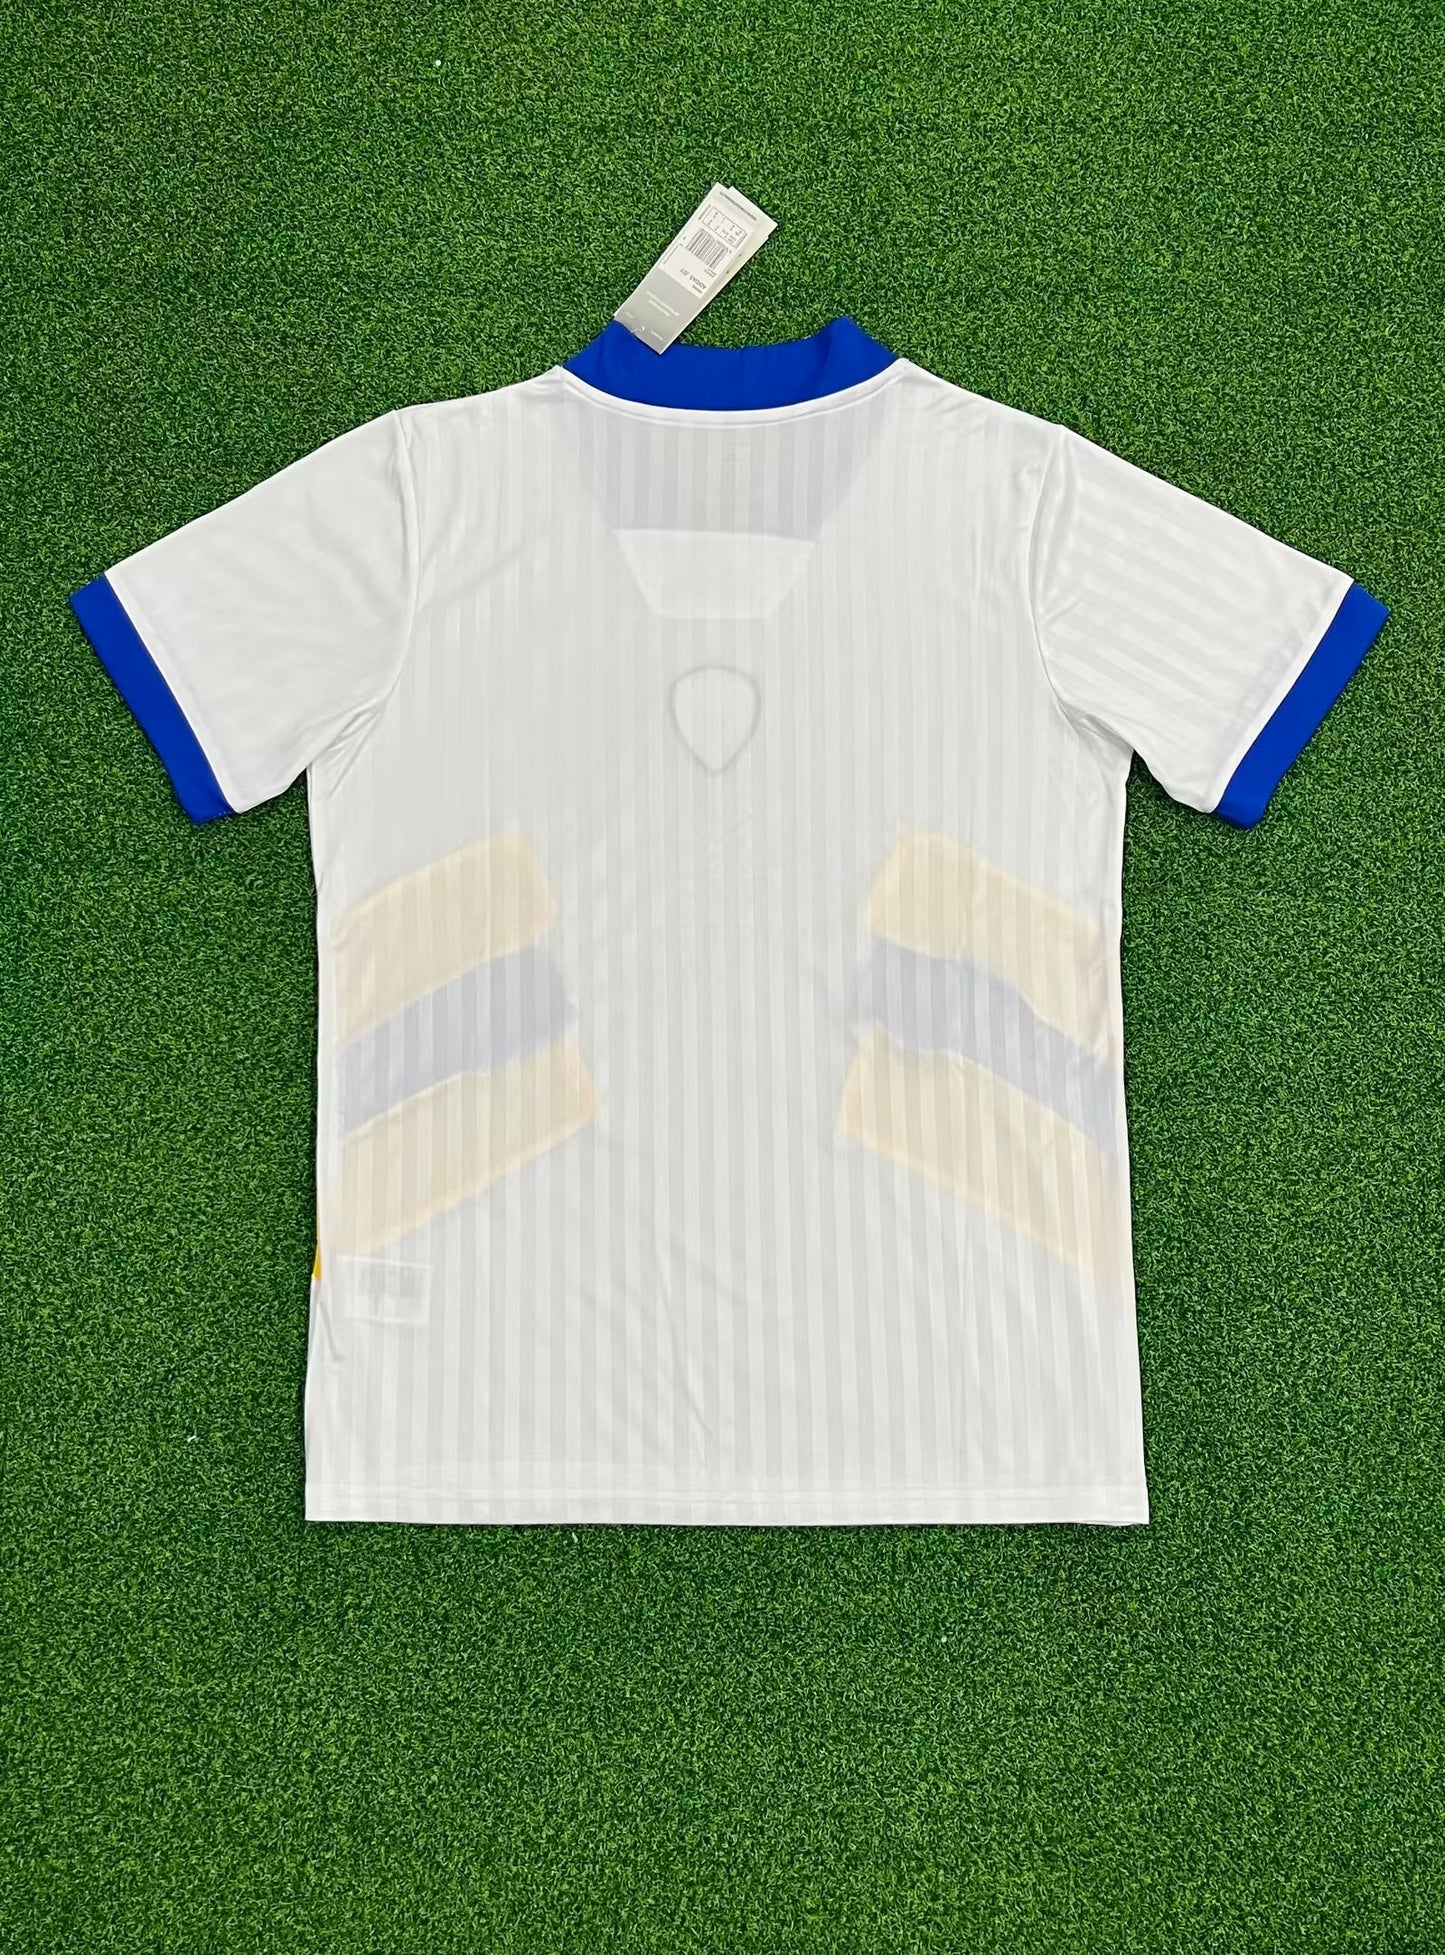 Leeds United 23-24 Icons Shirt